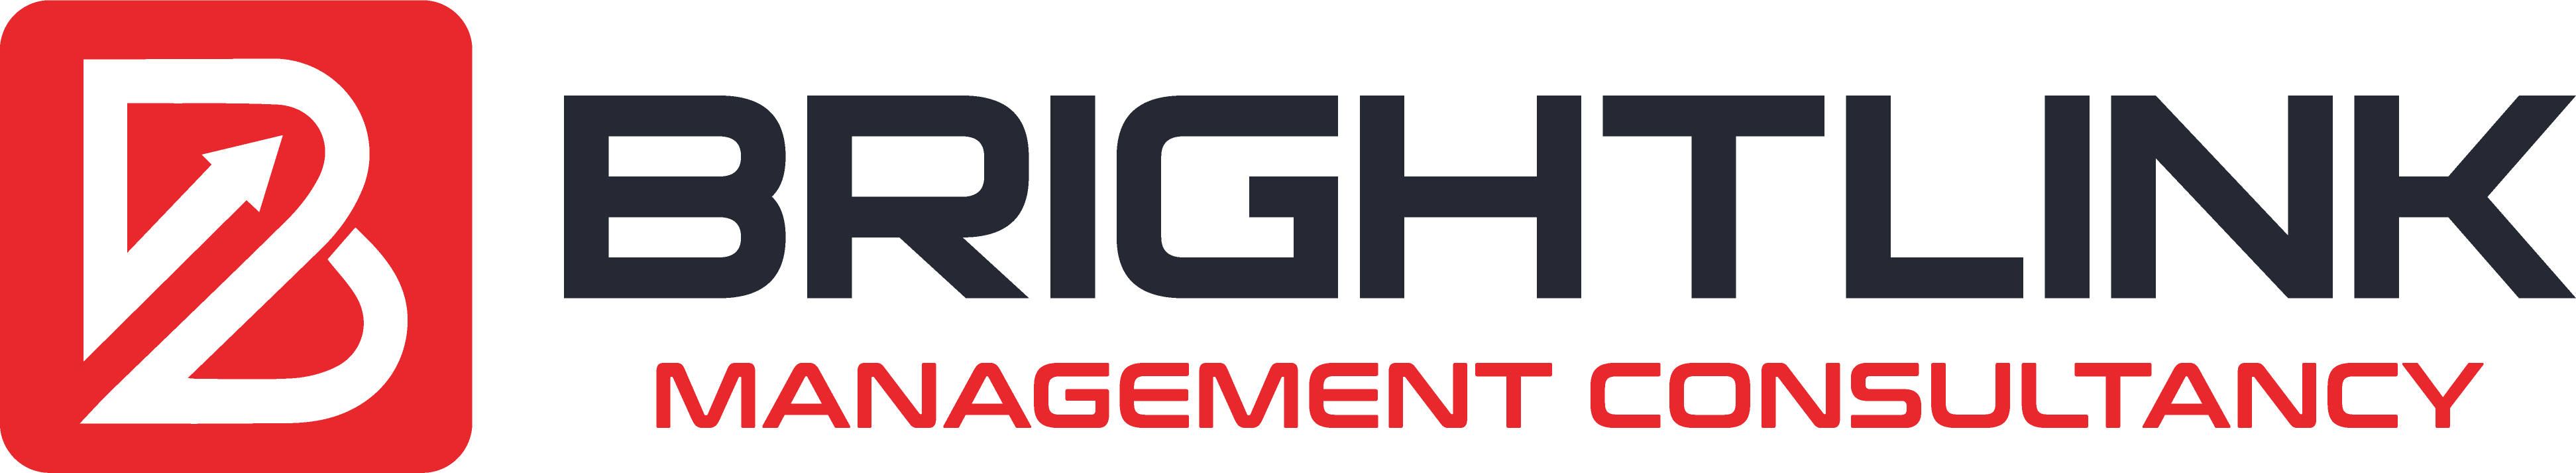 Brightlink_Management Consultancy_LOGO.png